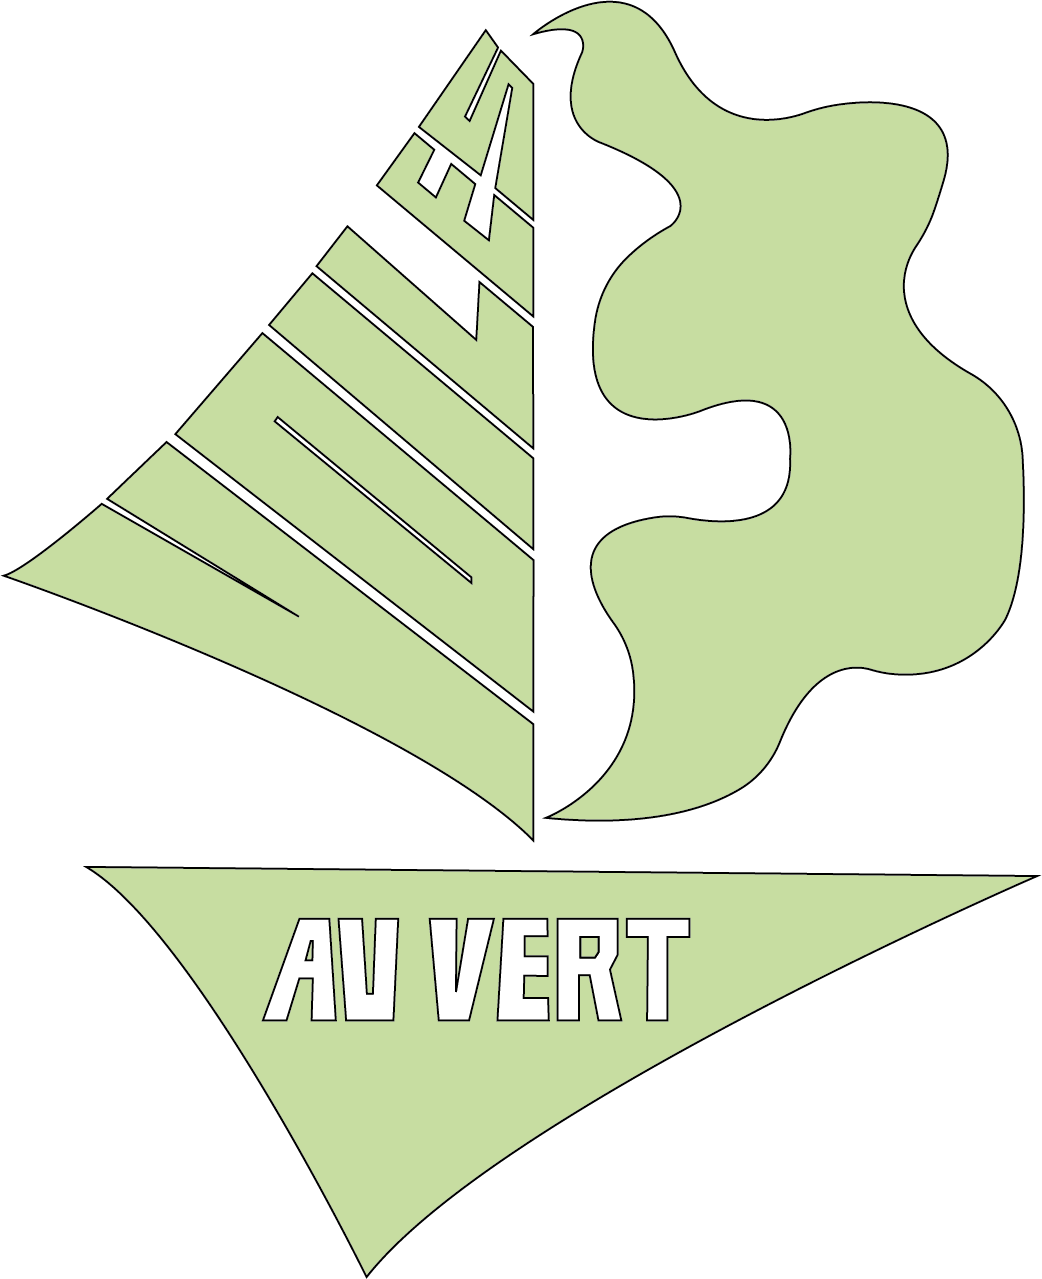 Logo voiles au vert